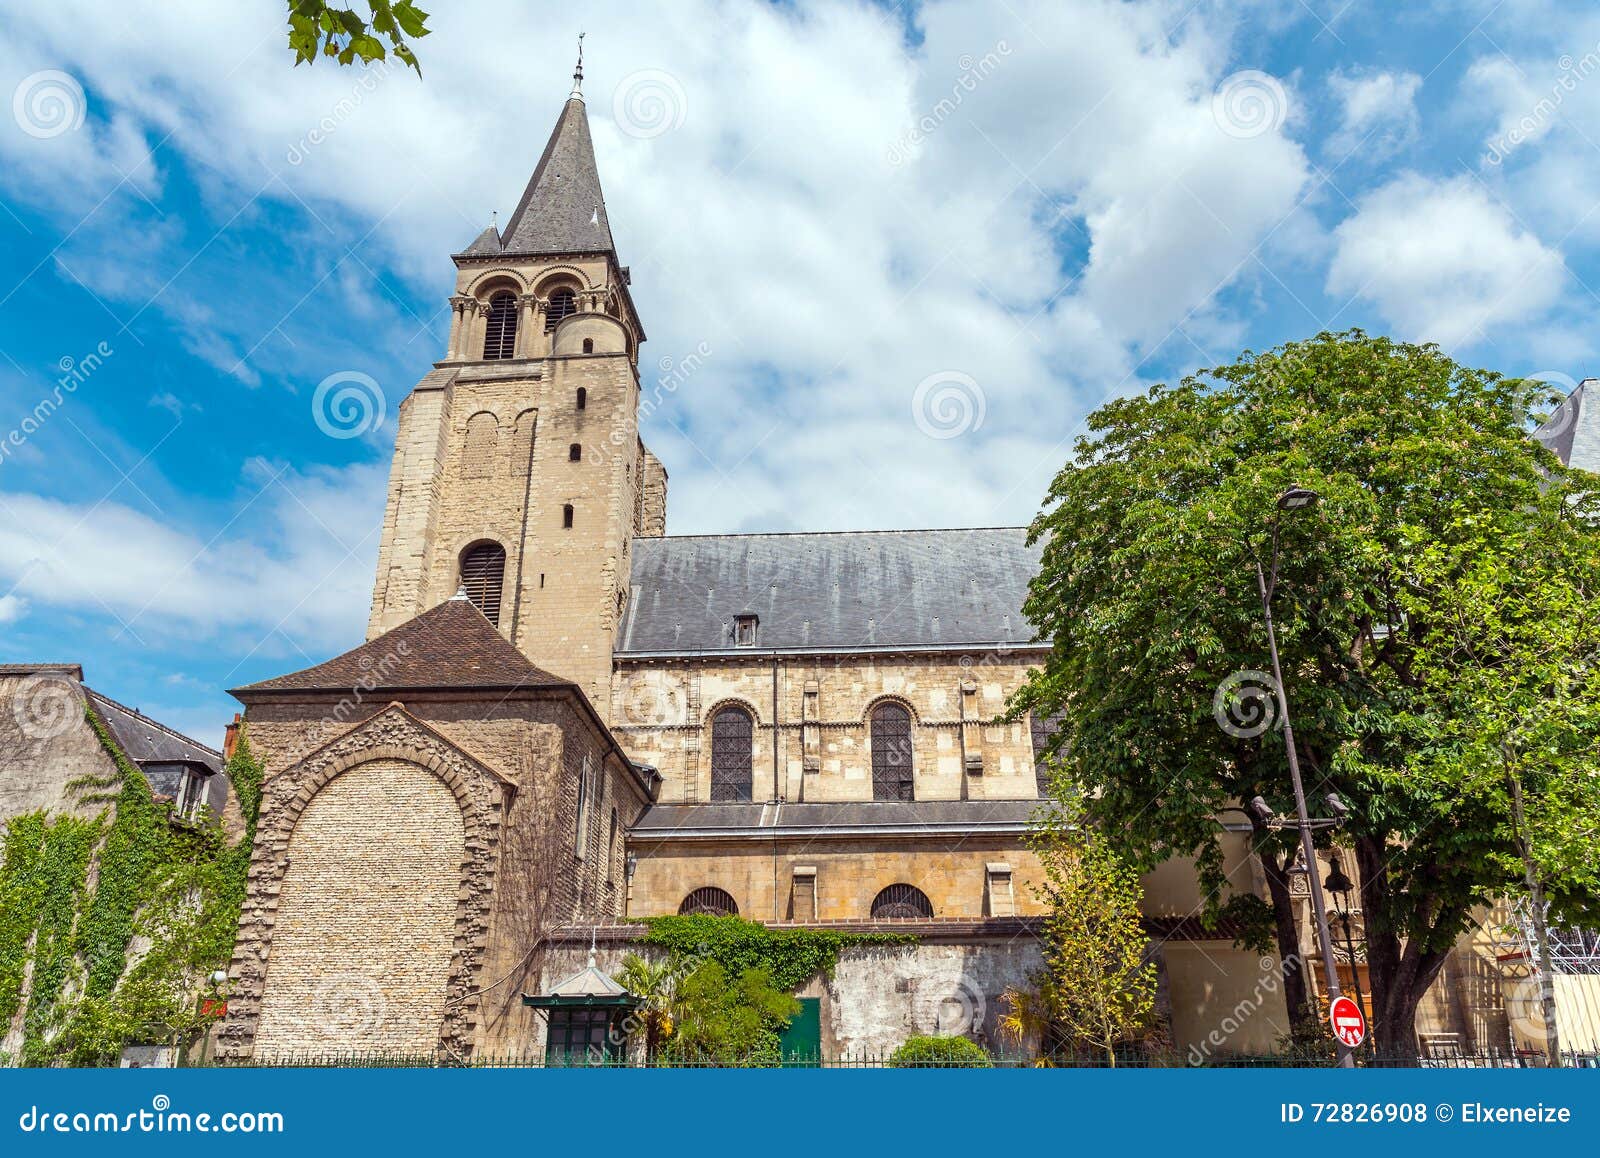 abbey of saint-germain-des-pres